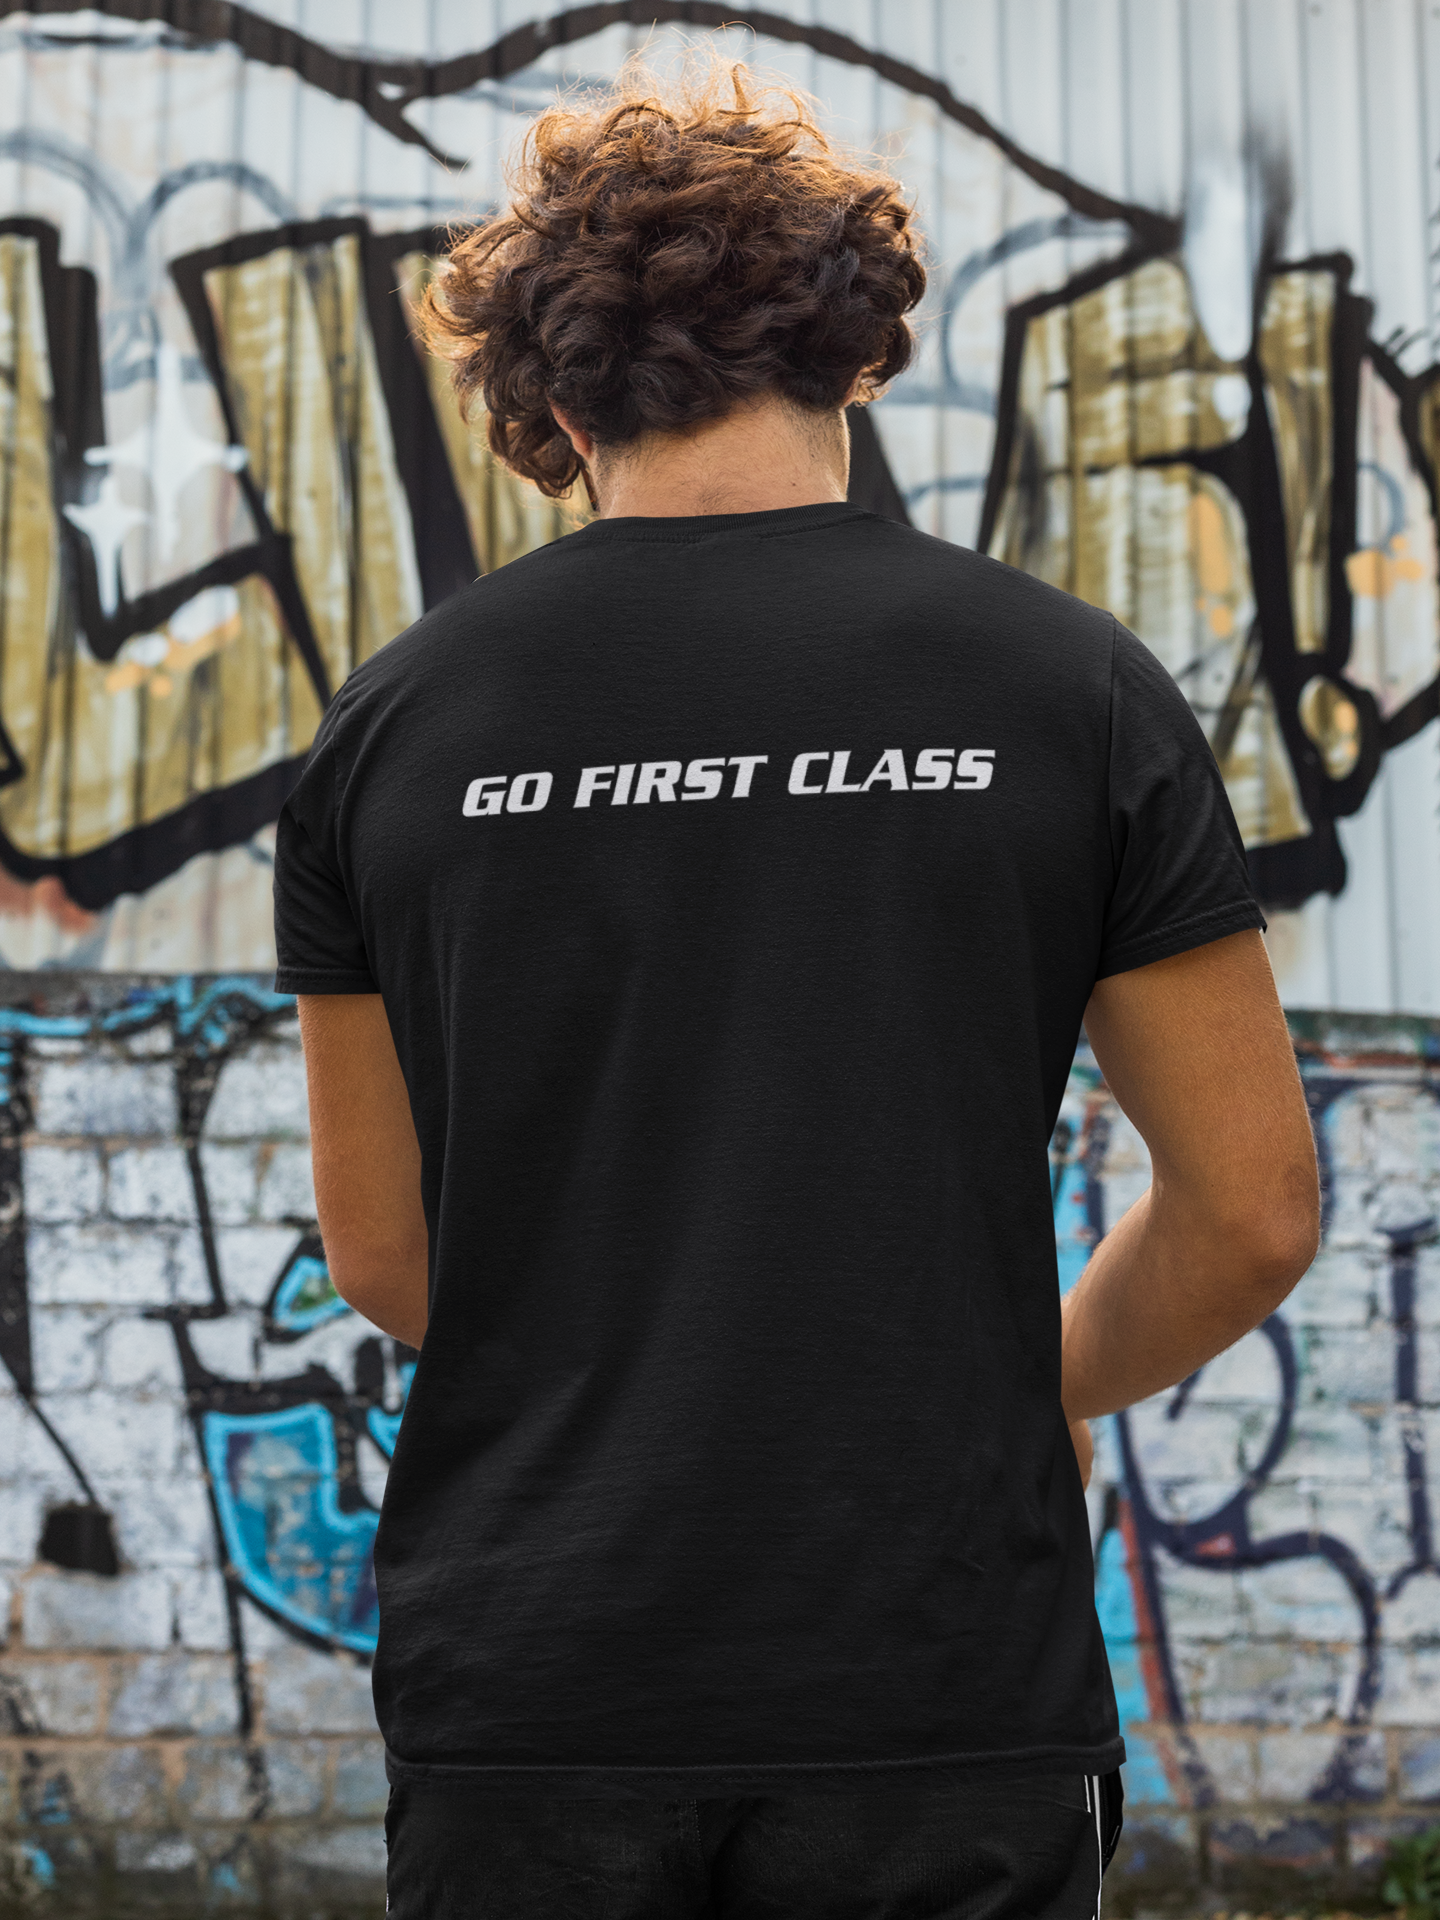 First Class Racing DBL side Men’s T-Shirt (2XL - 4XL)